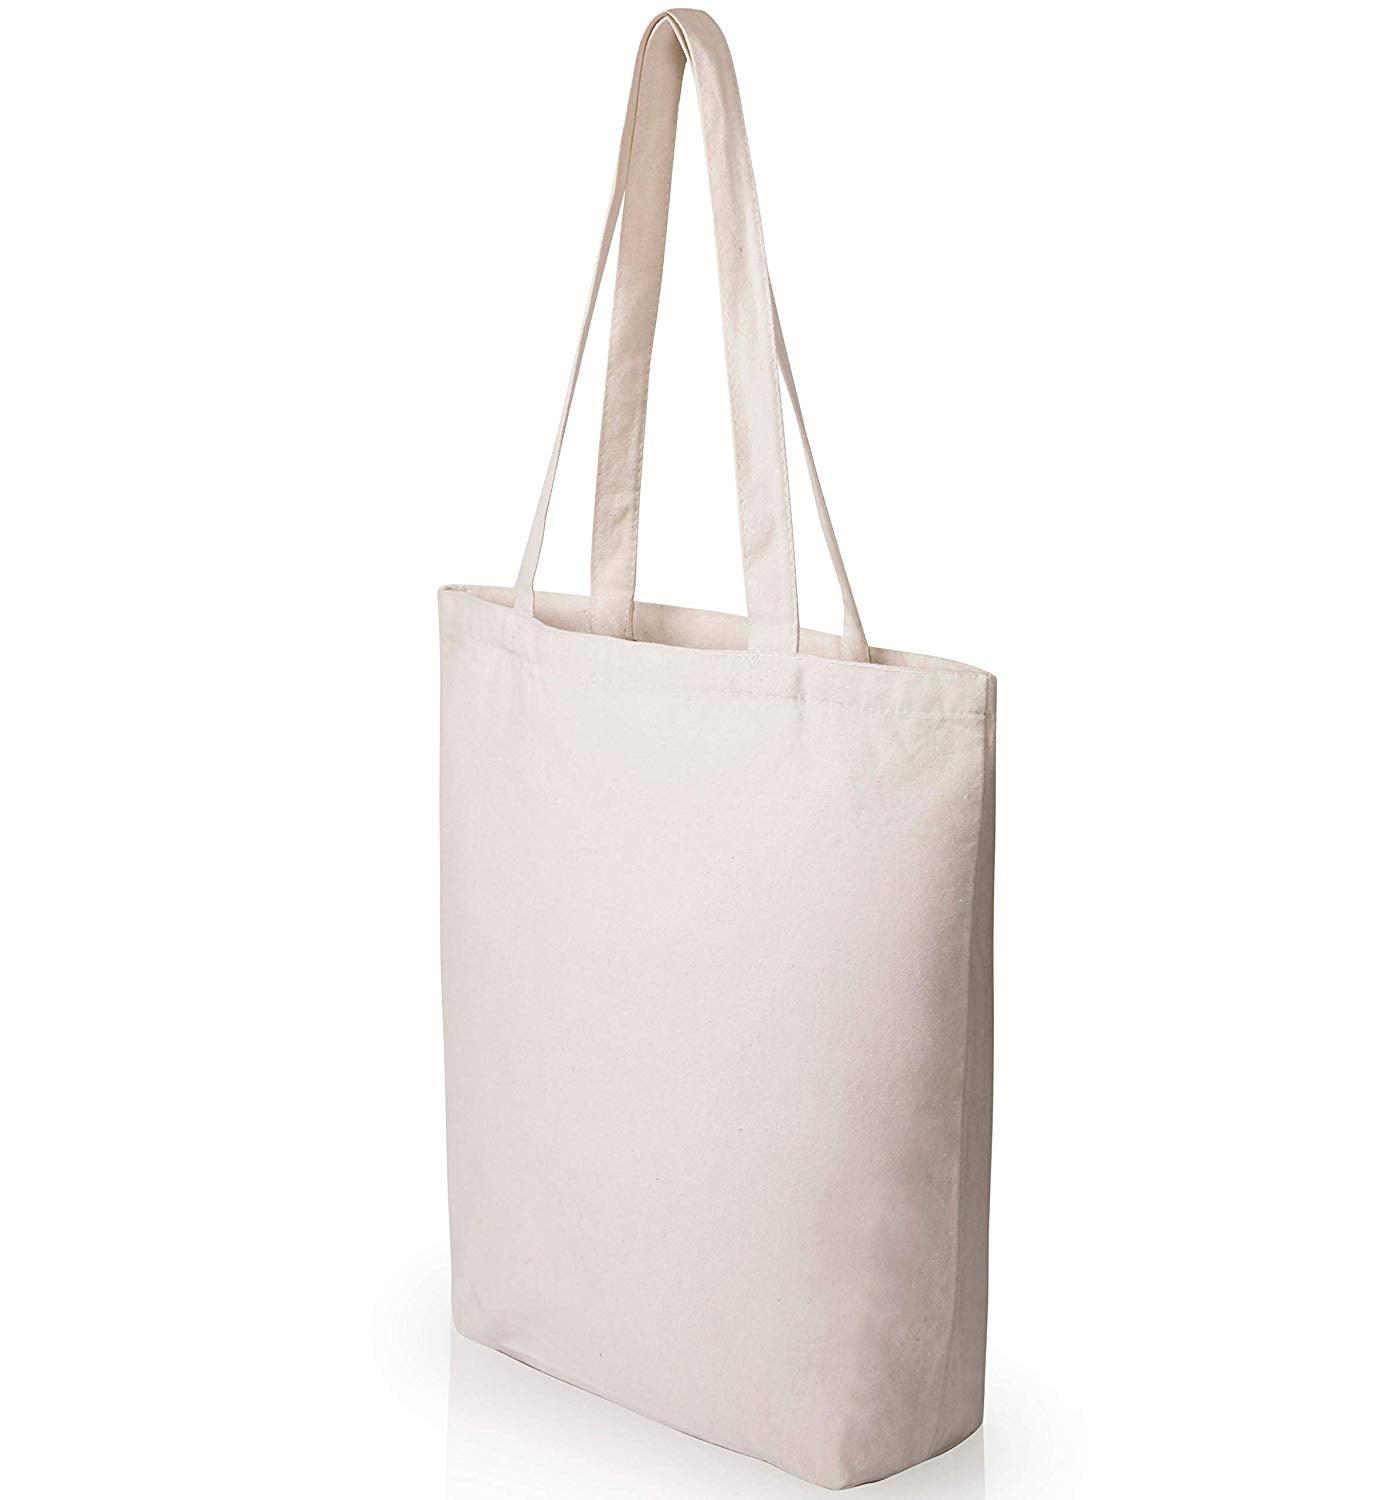 PROJECT & CRAFT BAG 'Sewing Notions' Design Fantastic Storage Bag  5029784926103 | eBay